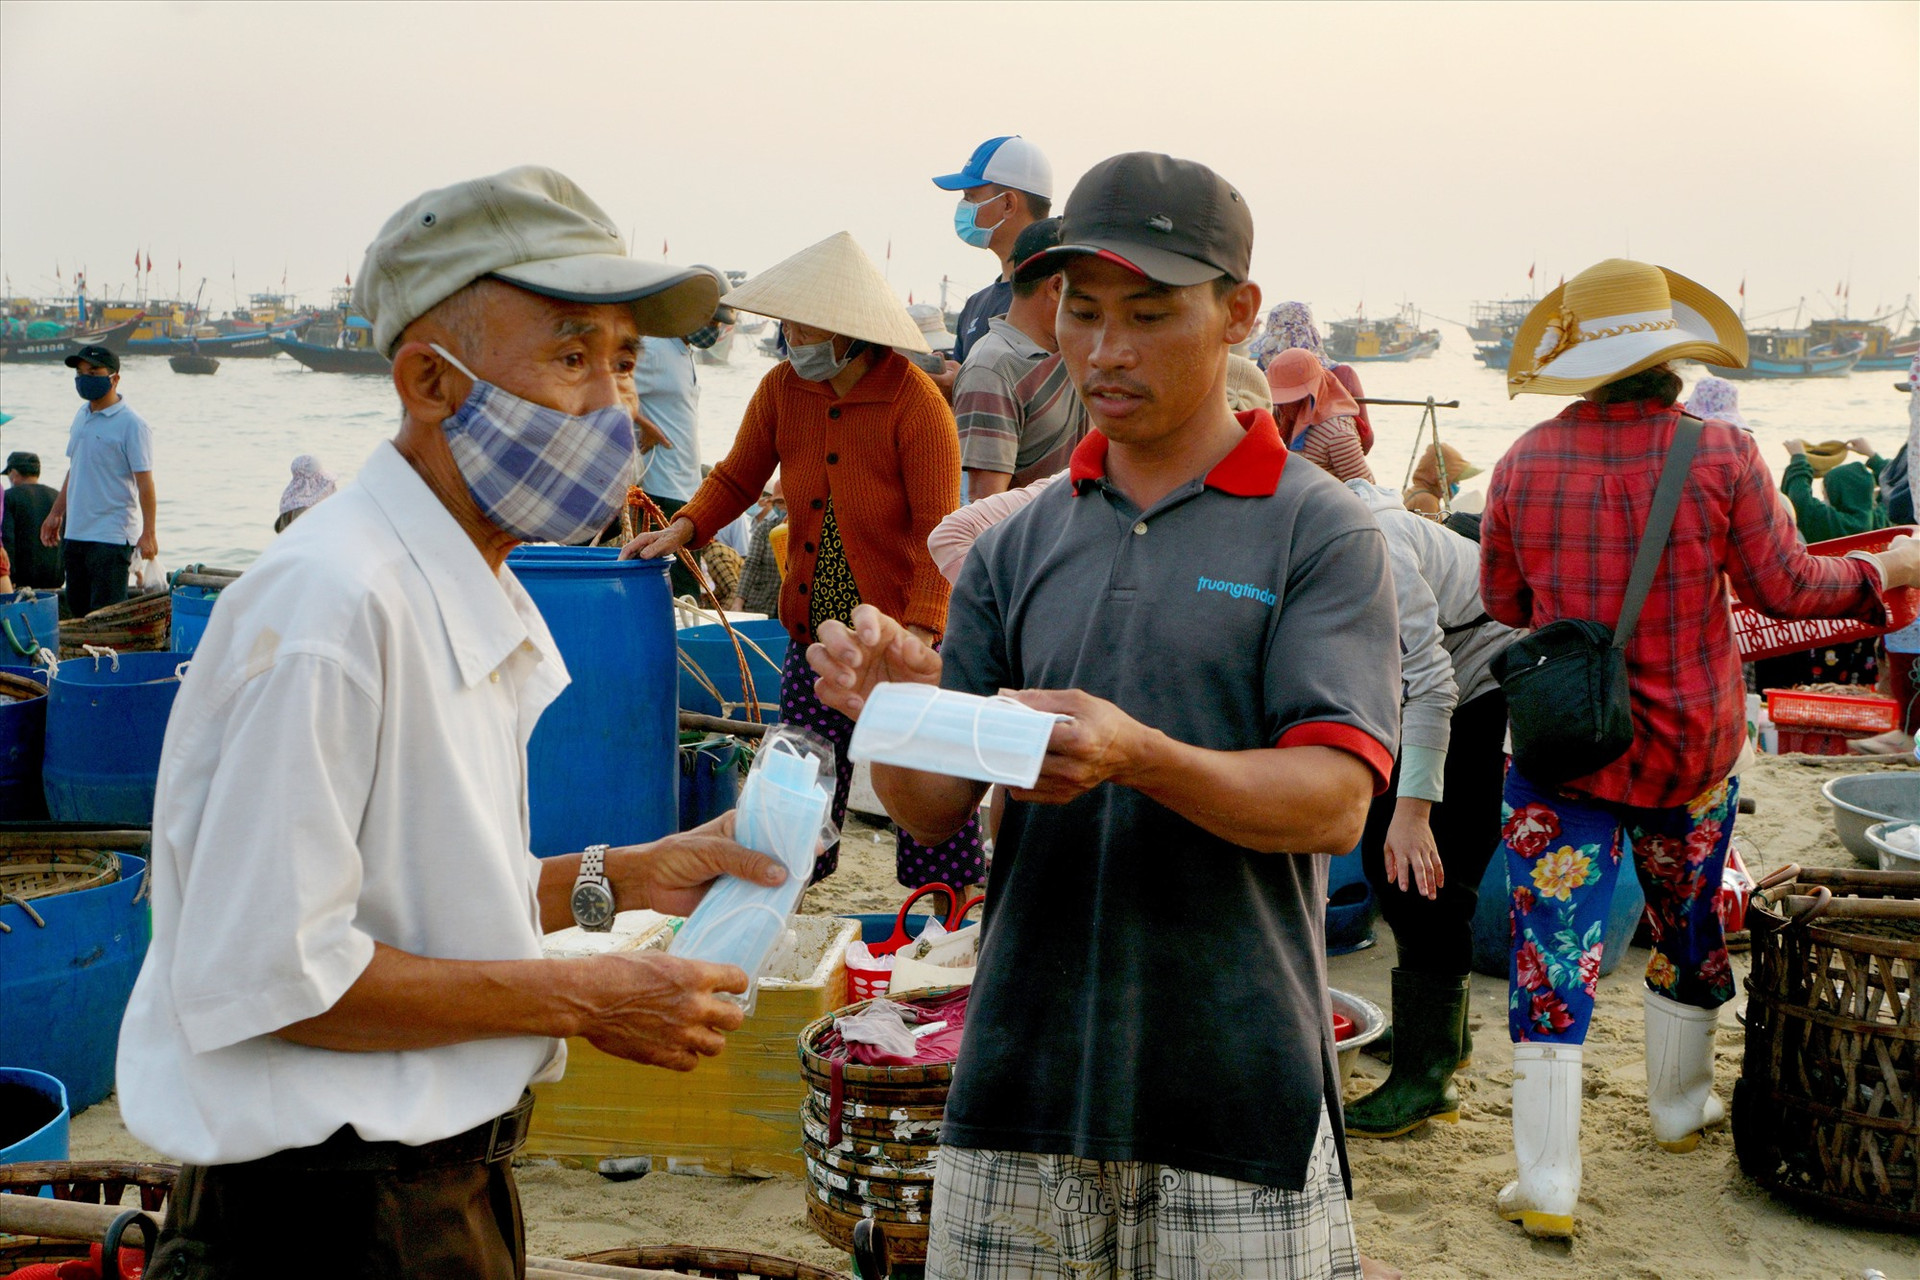 Phát và hướng dẫn người dân đeo khẩu trang để phòng chống dịch bệnh Covid-19. Ảnh: Nguyễn Điện Ngọc